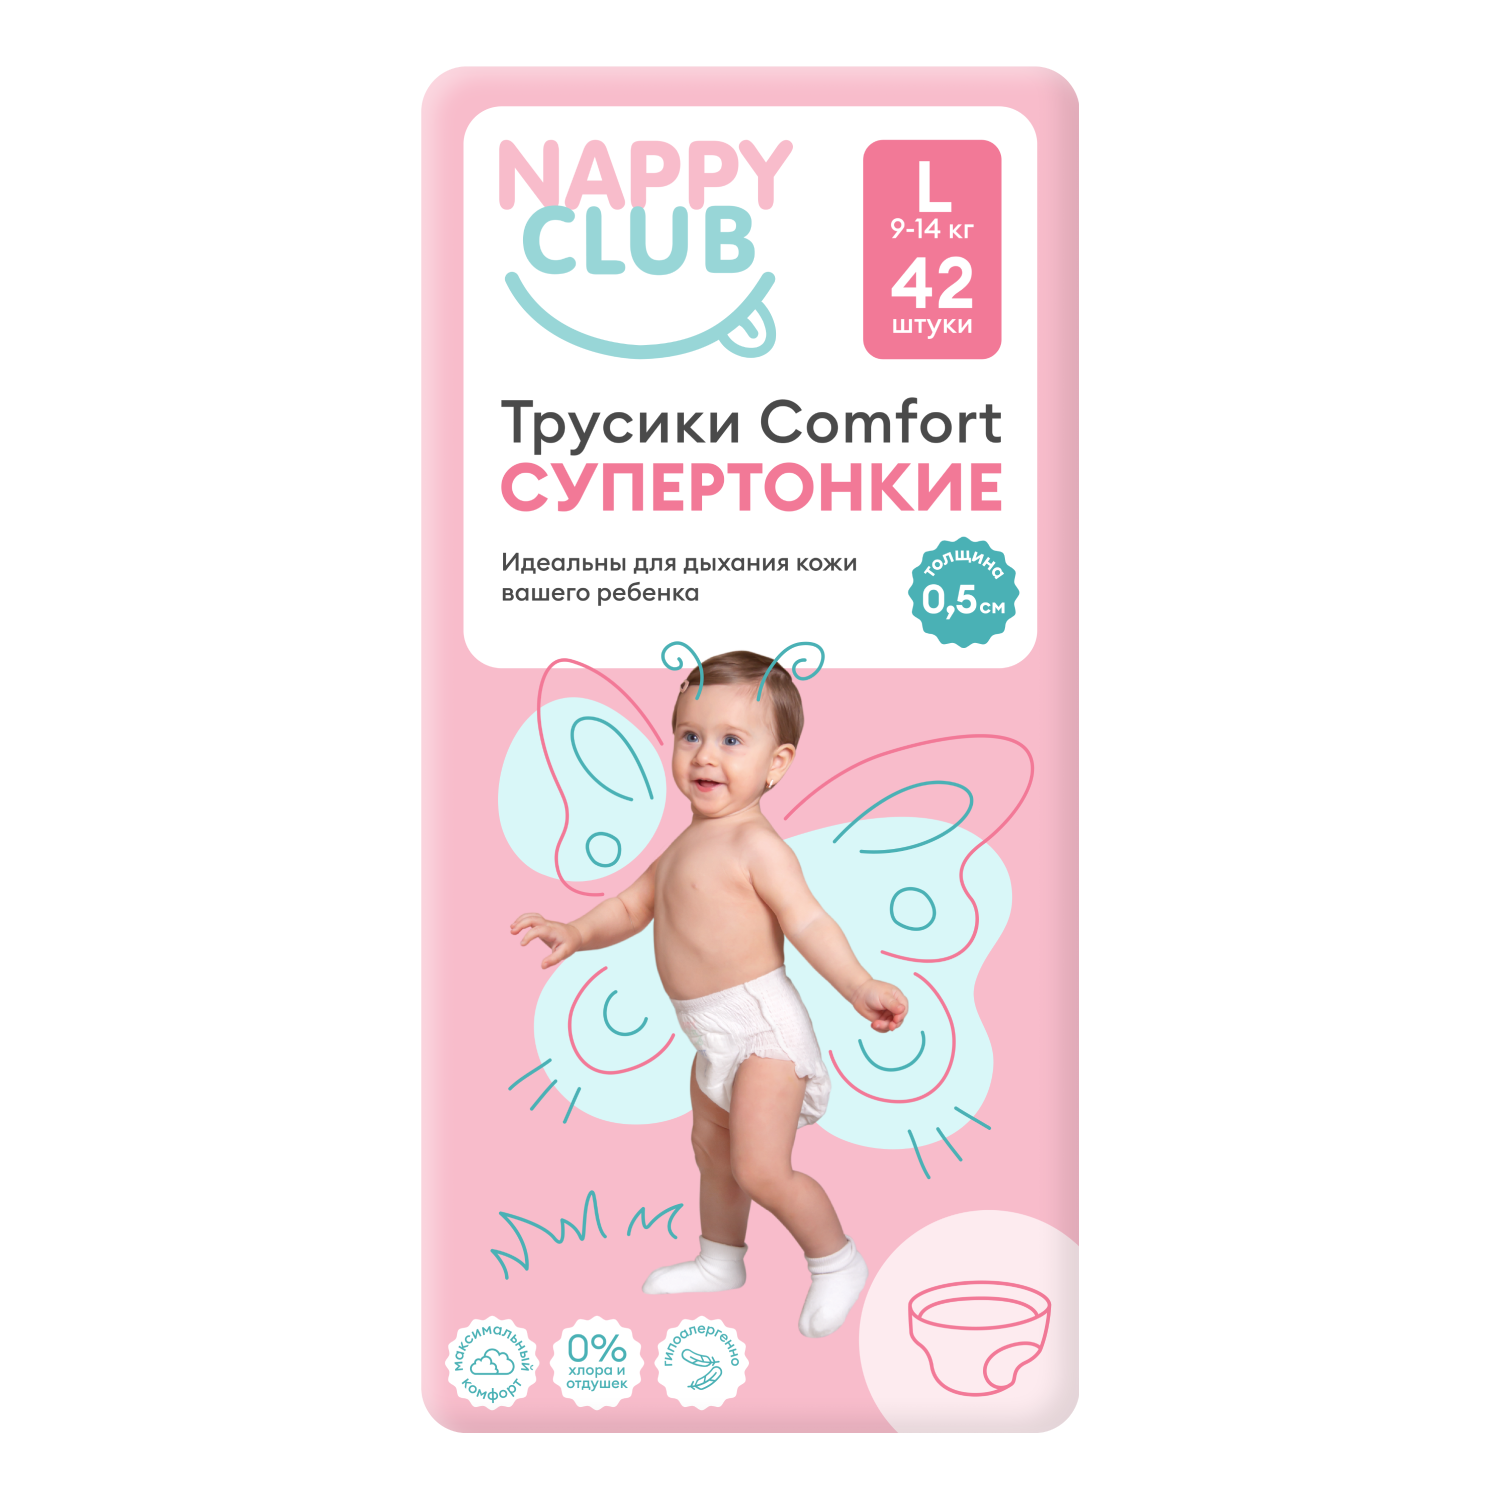 NappyClub трусики Comfort дневные супер-тонкие L (9-14 кг) 42 шт.